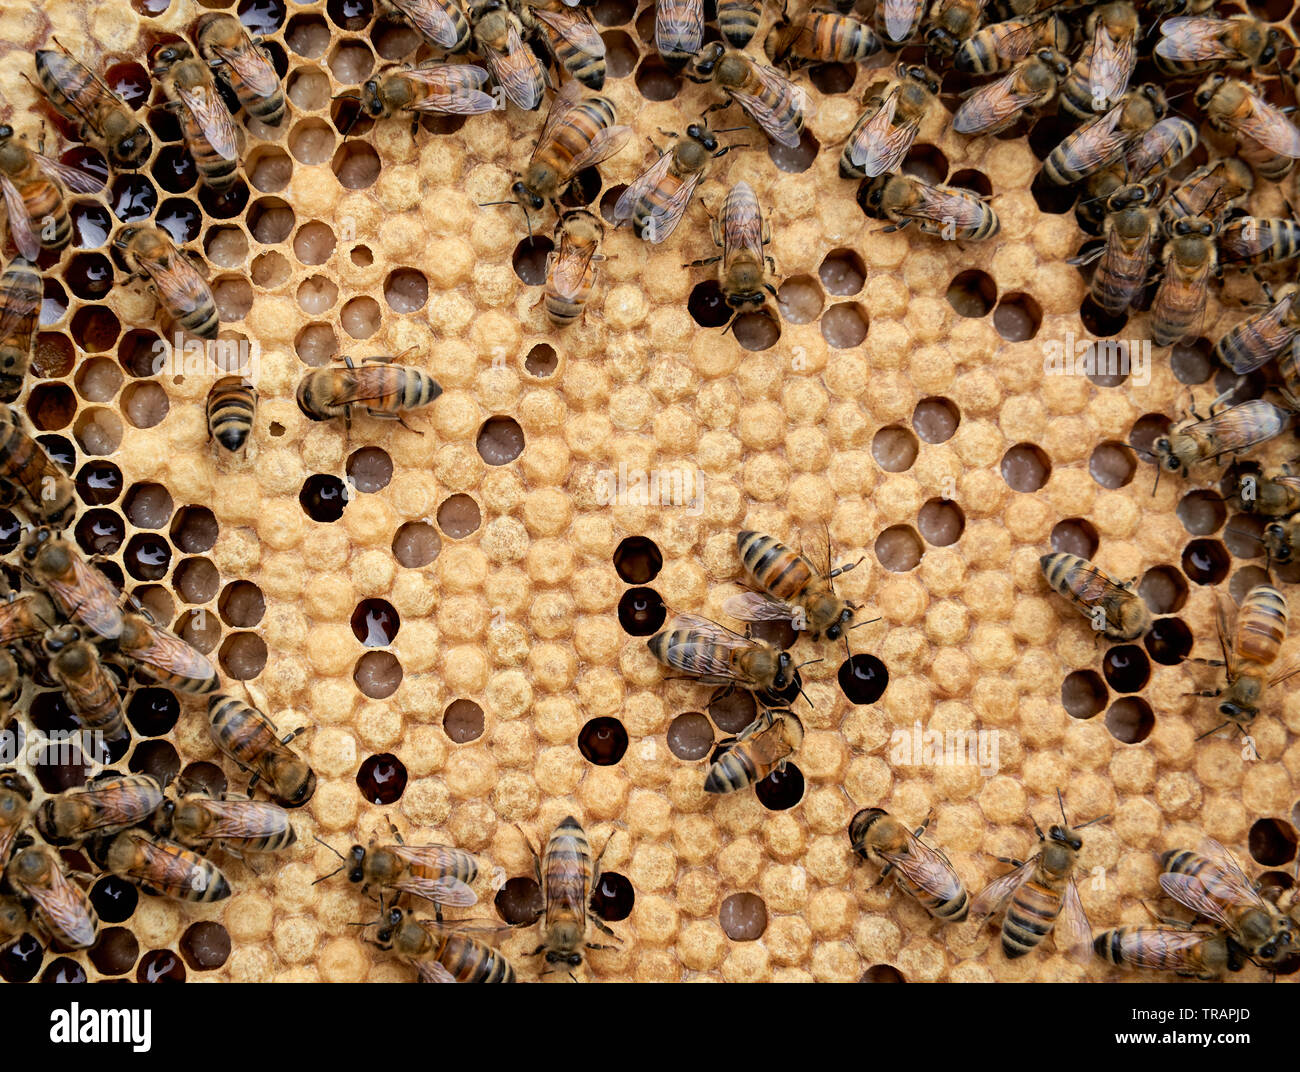 Bienen auf einen Rahmen. Die weißen Zellen unter den gelben sind jedoch Larven Bienen. Urban beeking hat viel populärer geworden in den letzten Jahren. Stockfoto